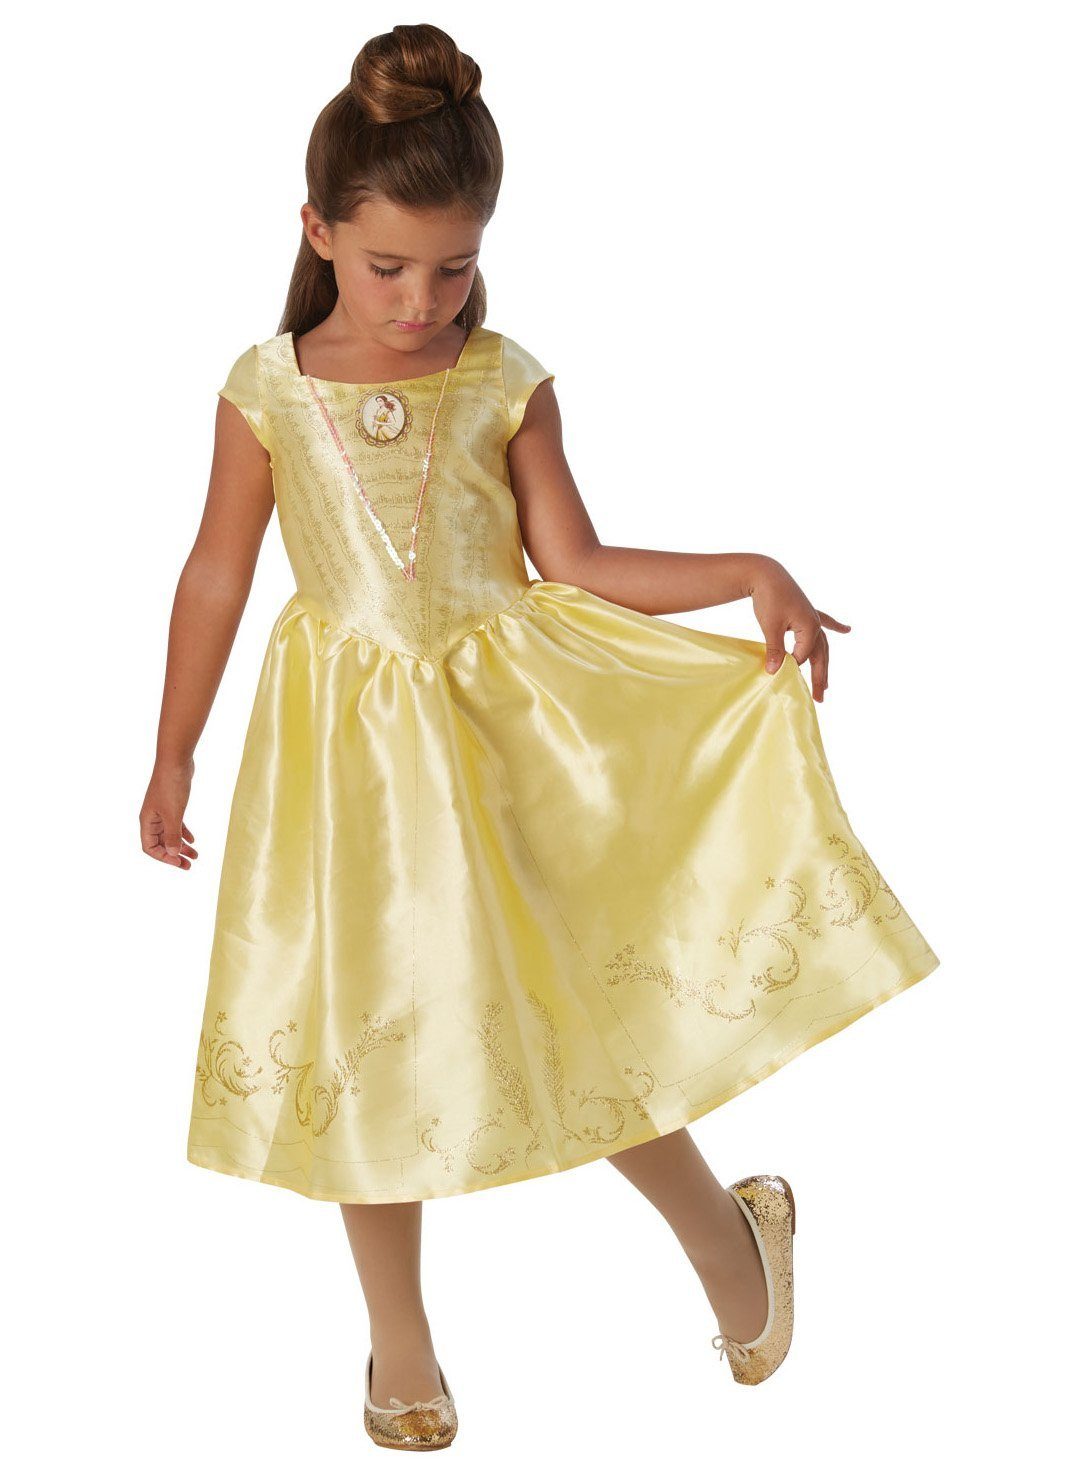 Rubie´s Kostüm Disney Prinzessin Belle Kostüm für Kinder, Klassische Märchenprinzessin aus dem Disney Universum